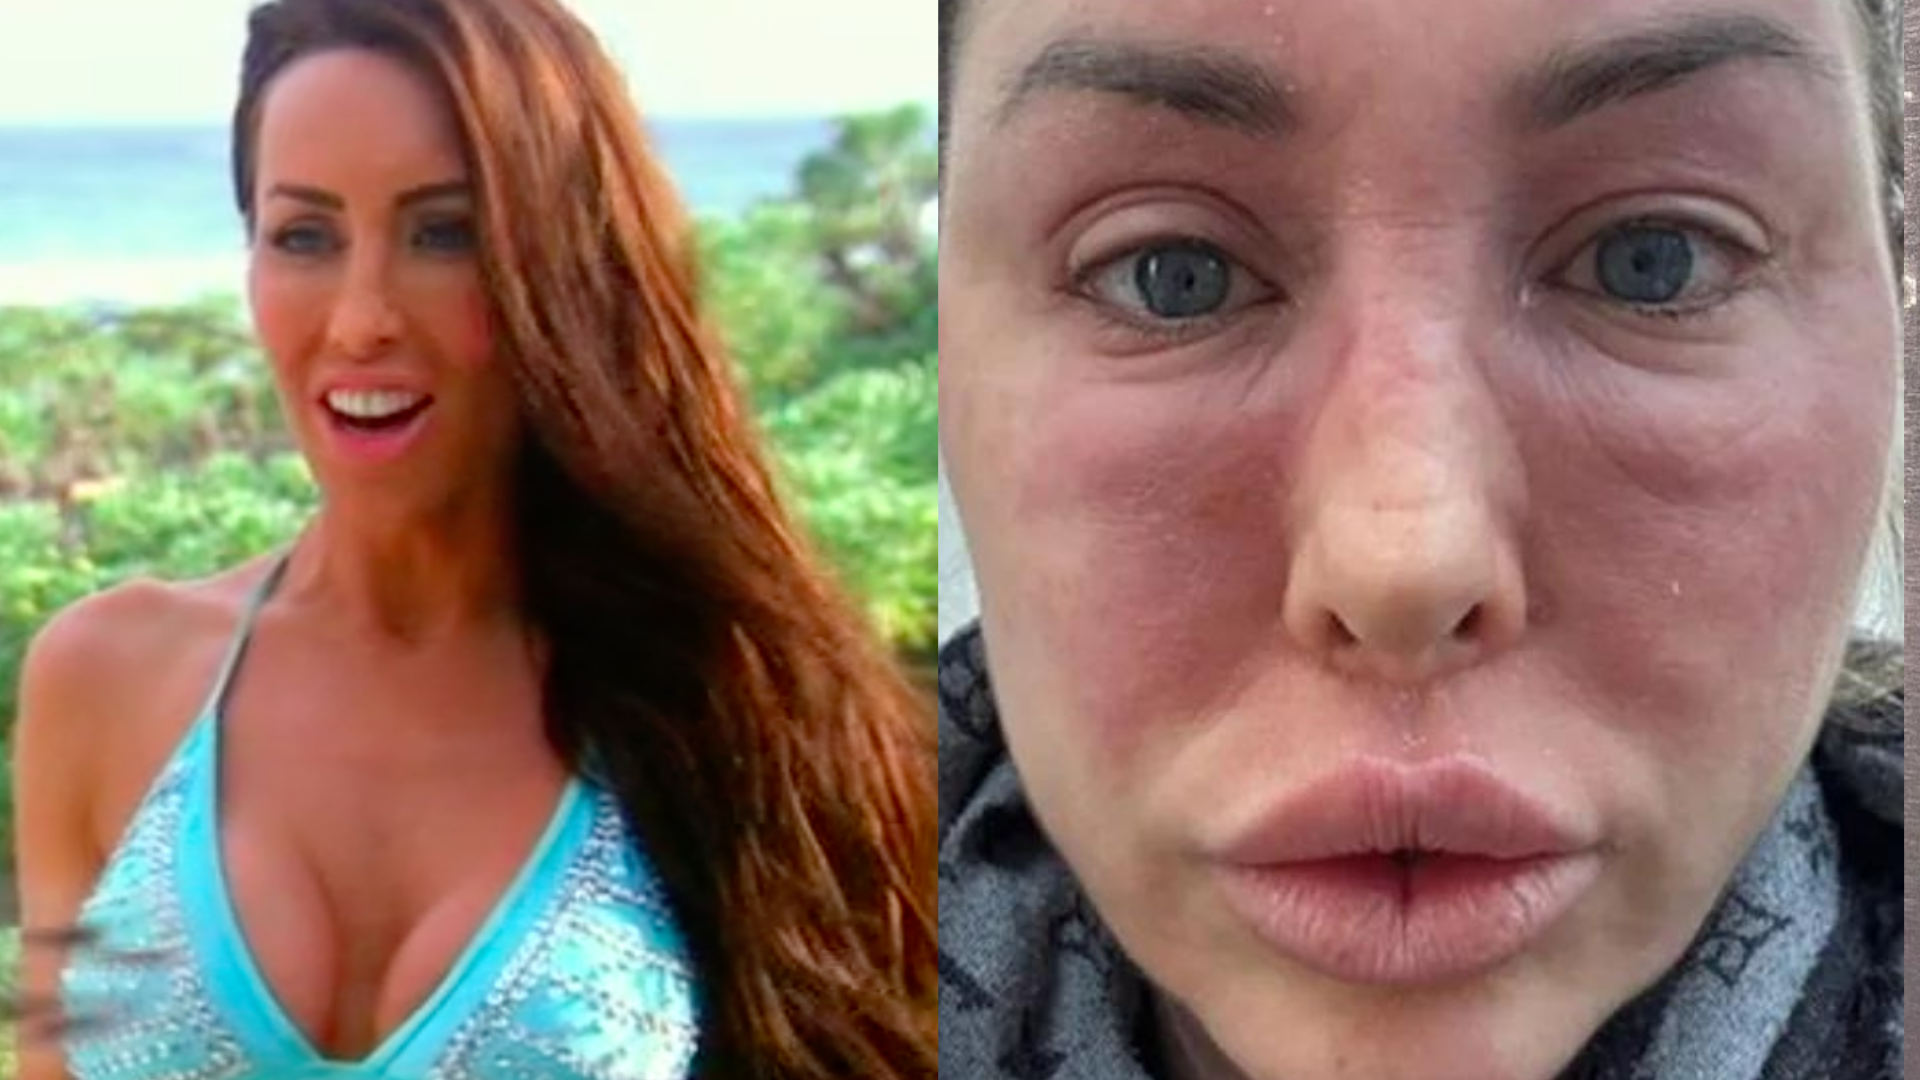 Estrela de reality britânico fica com o rosto desfigurado após reação alérgica